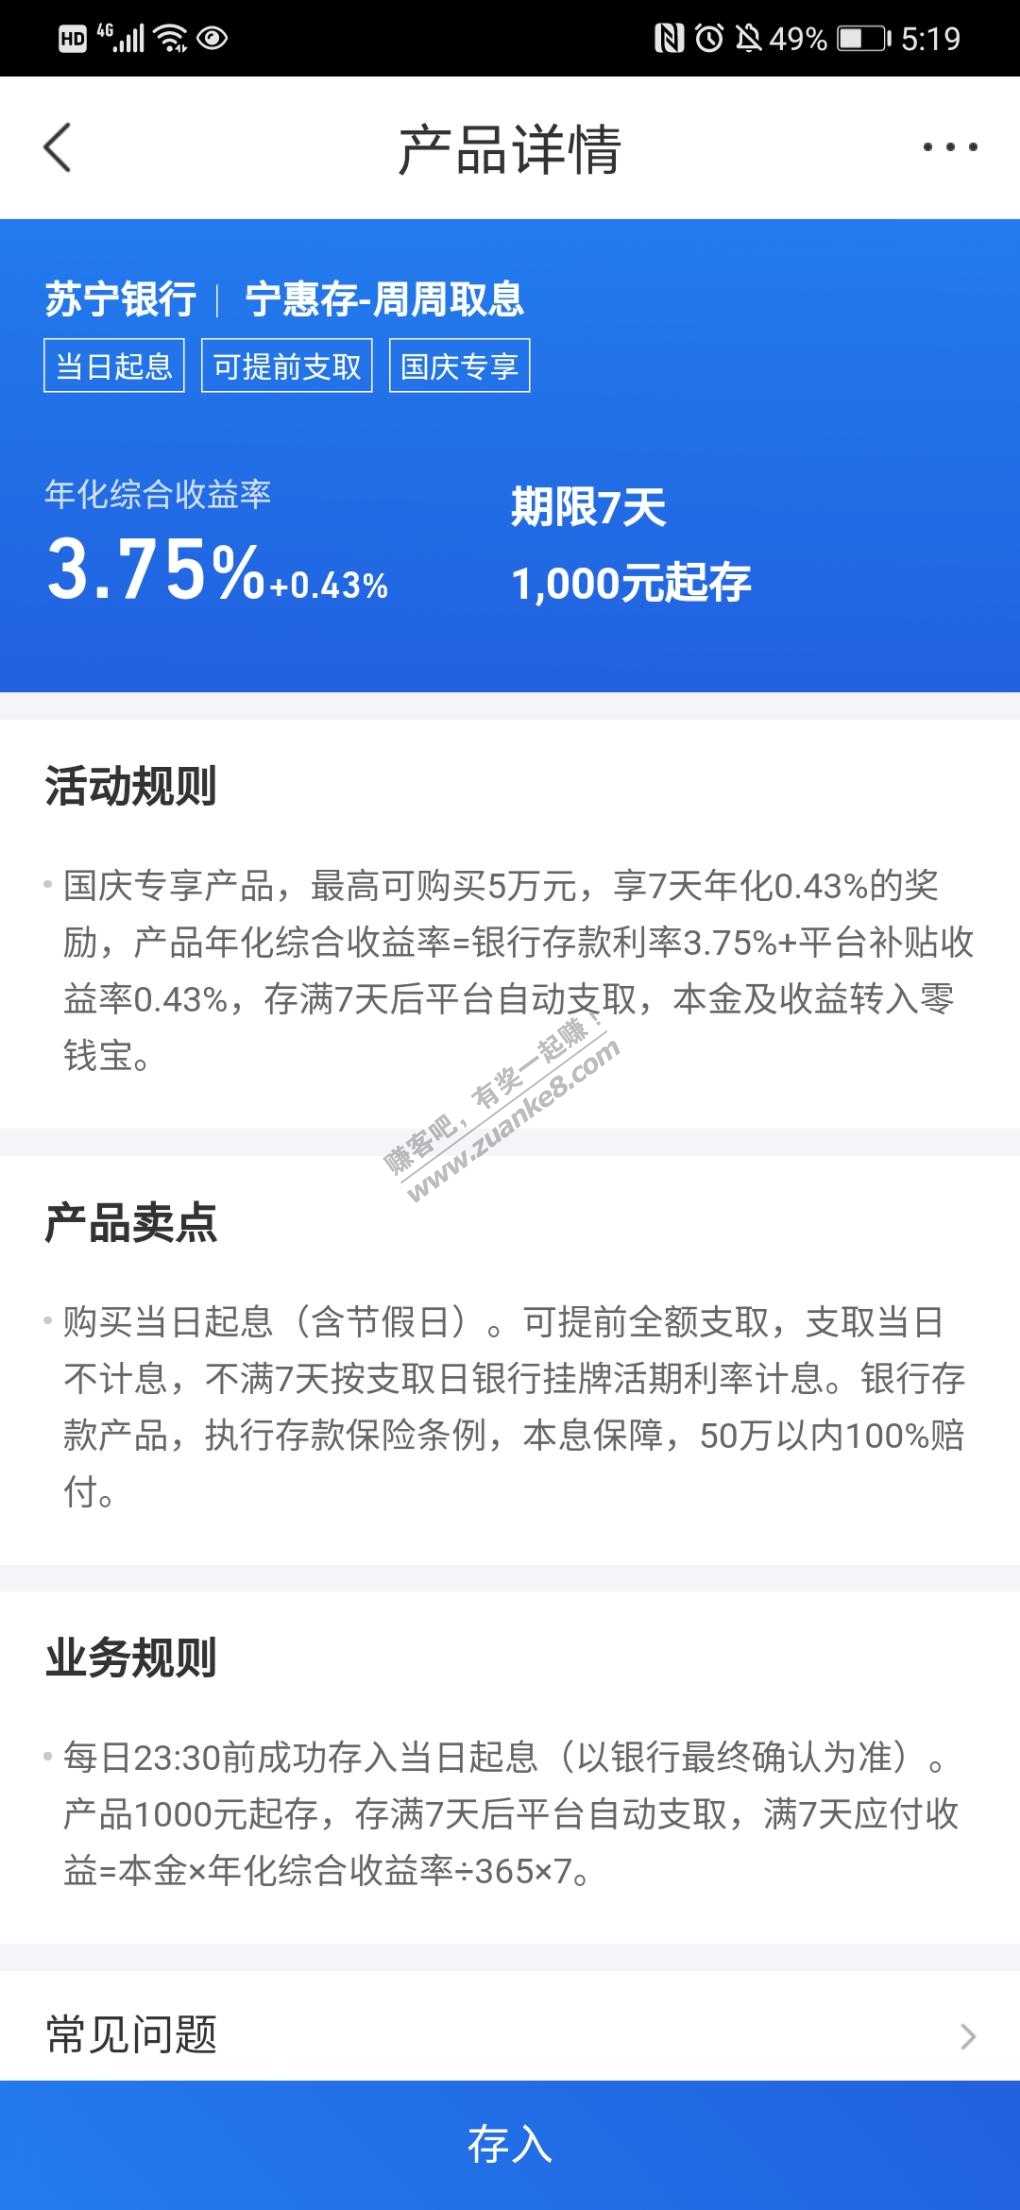 苏宁七天付息的存款收益涨到4.18了-很适合国庆放啊-惠小助(52huixz.com)